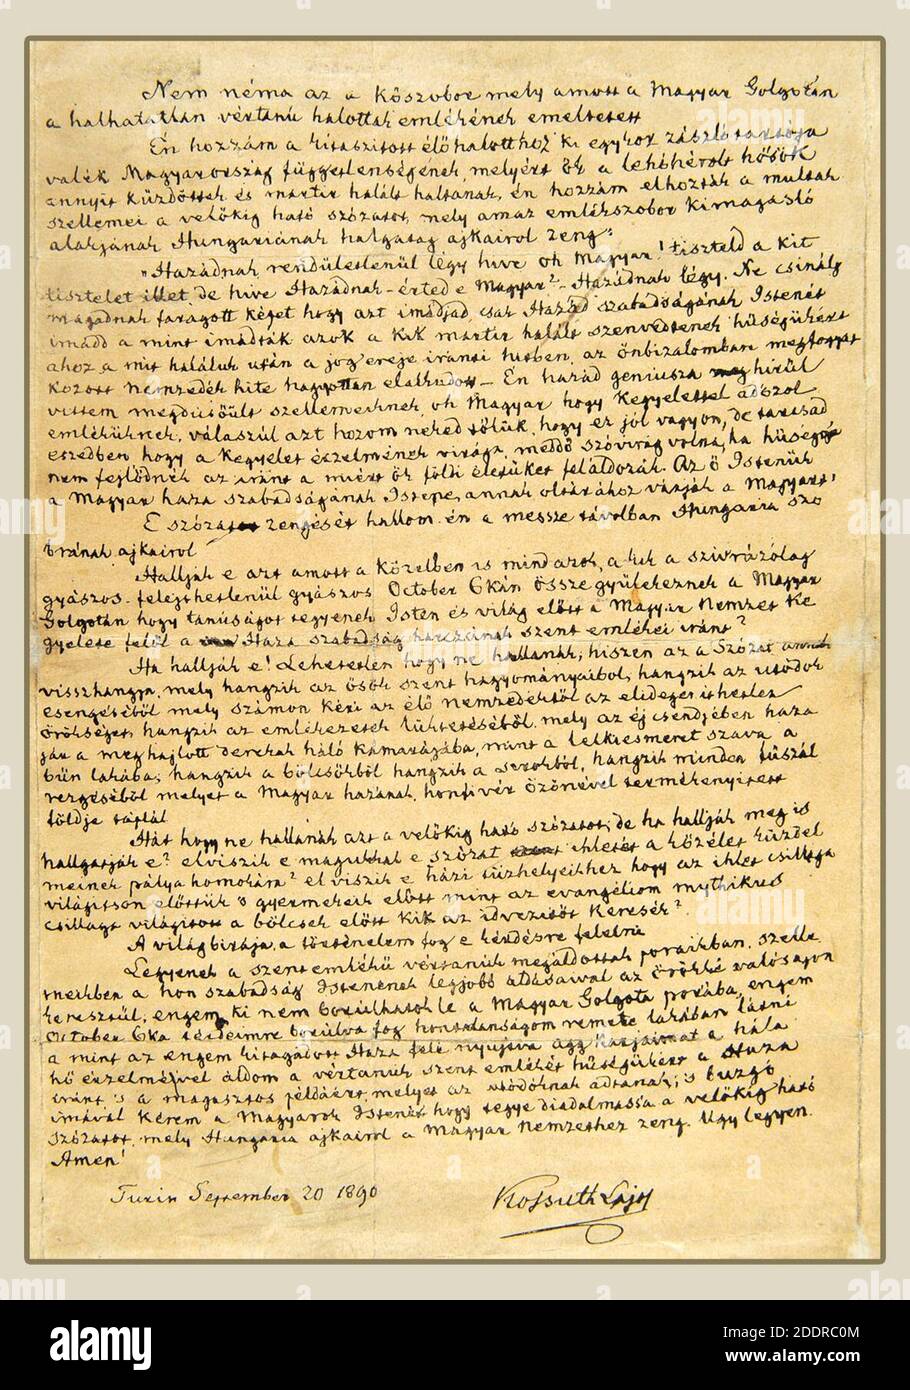 Kossuth texte écrit arad discours. Banque D'Images